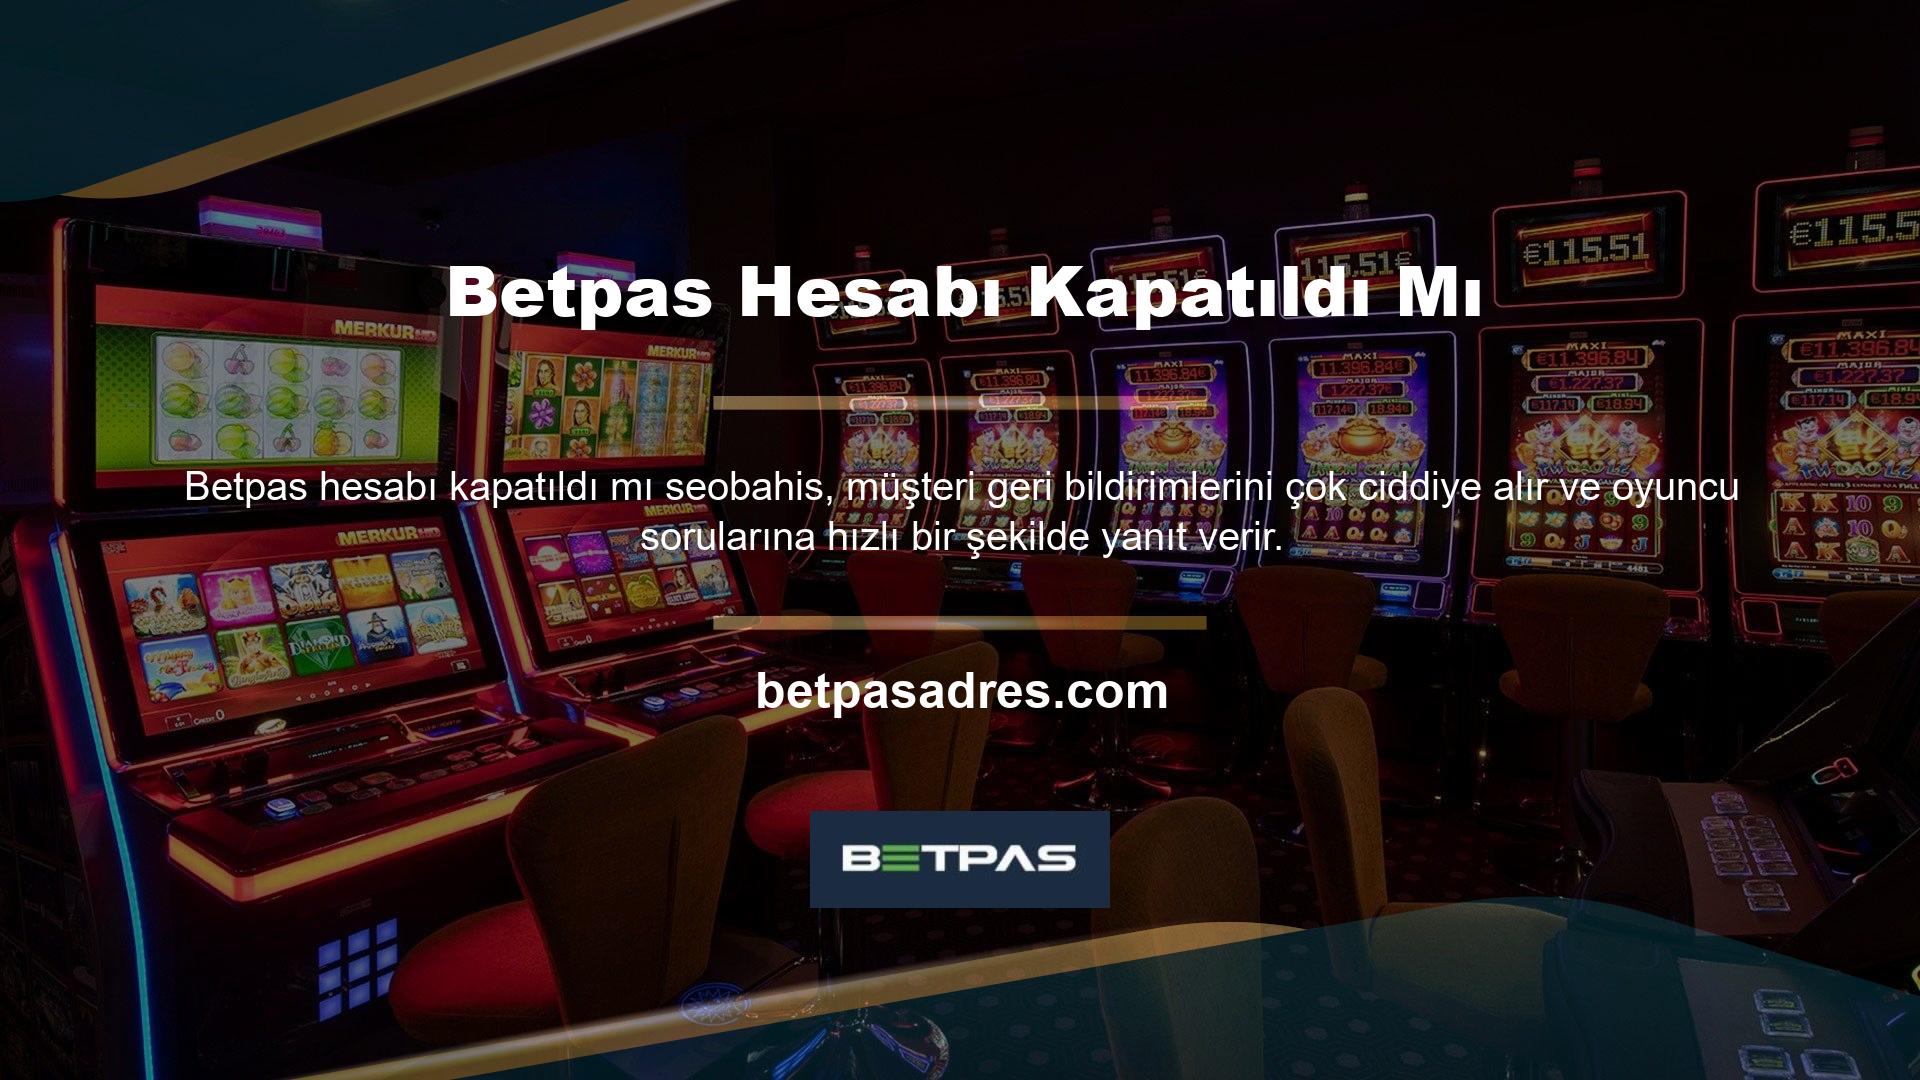 Bazı oyuncular, Betpas programını sonlandırmak için hesabın kapatılmasını talep edebilir